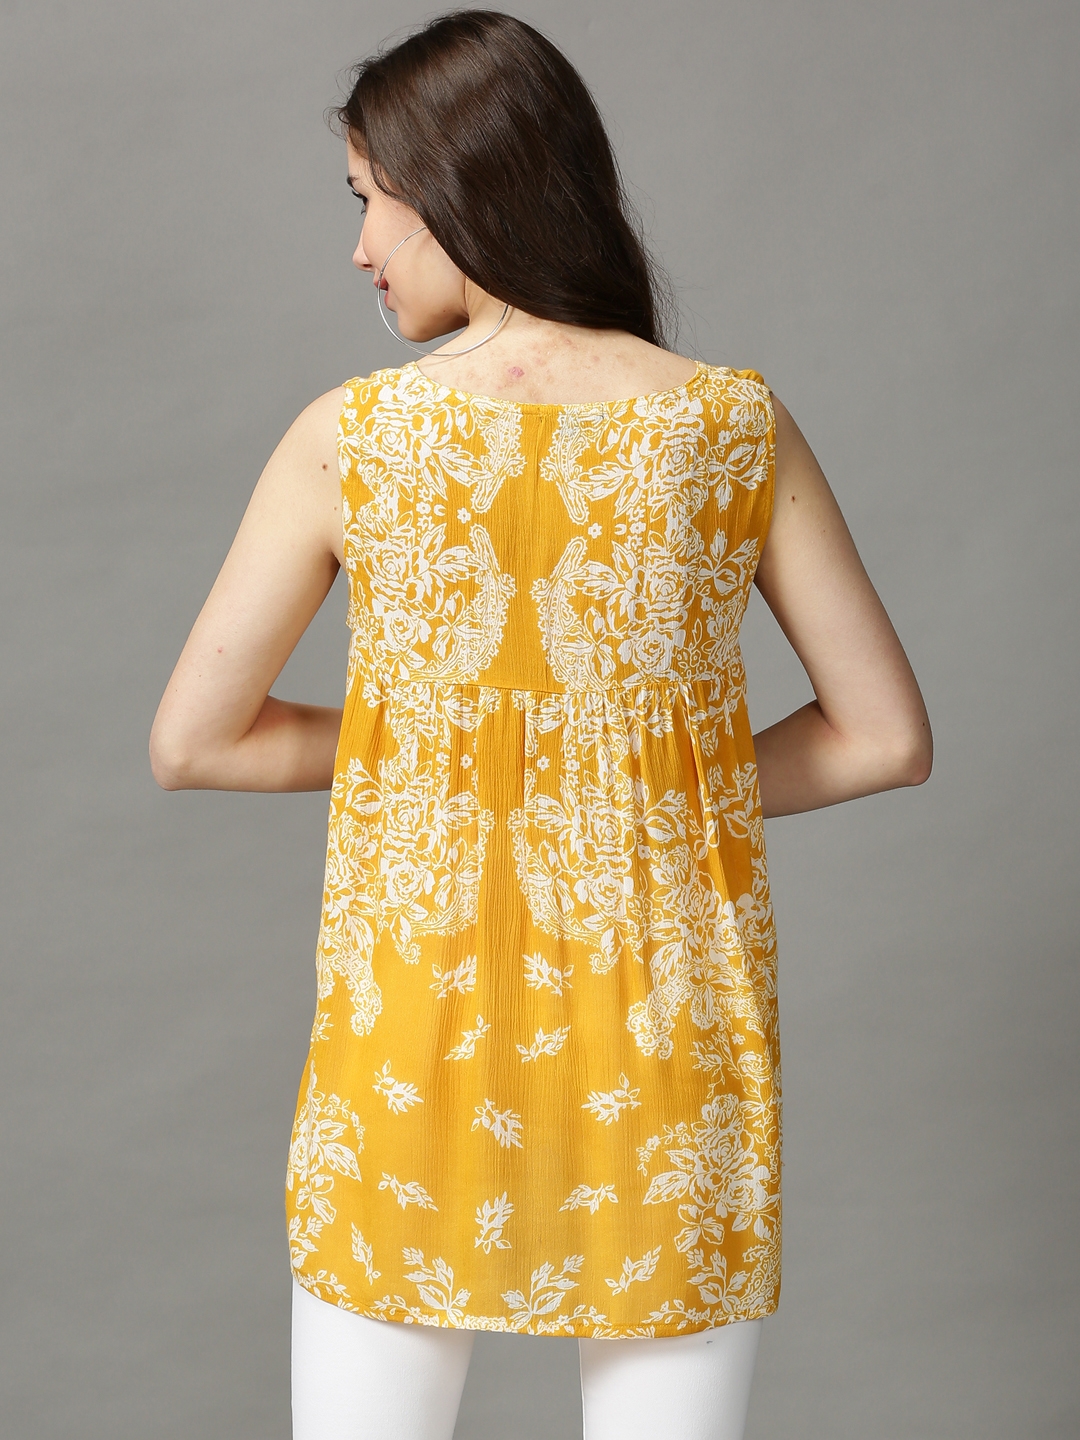 Women's Yellow Viscose Rayon Printed Tops